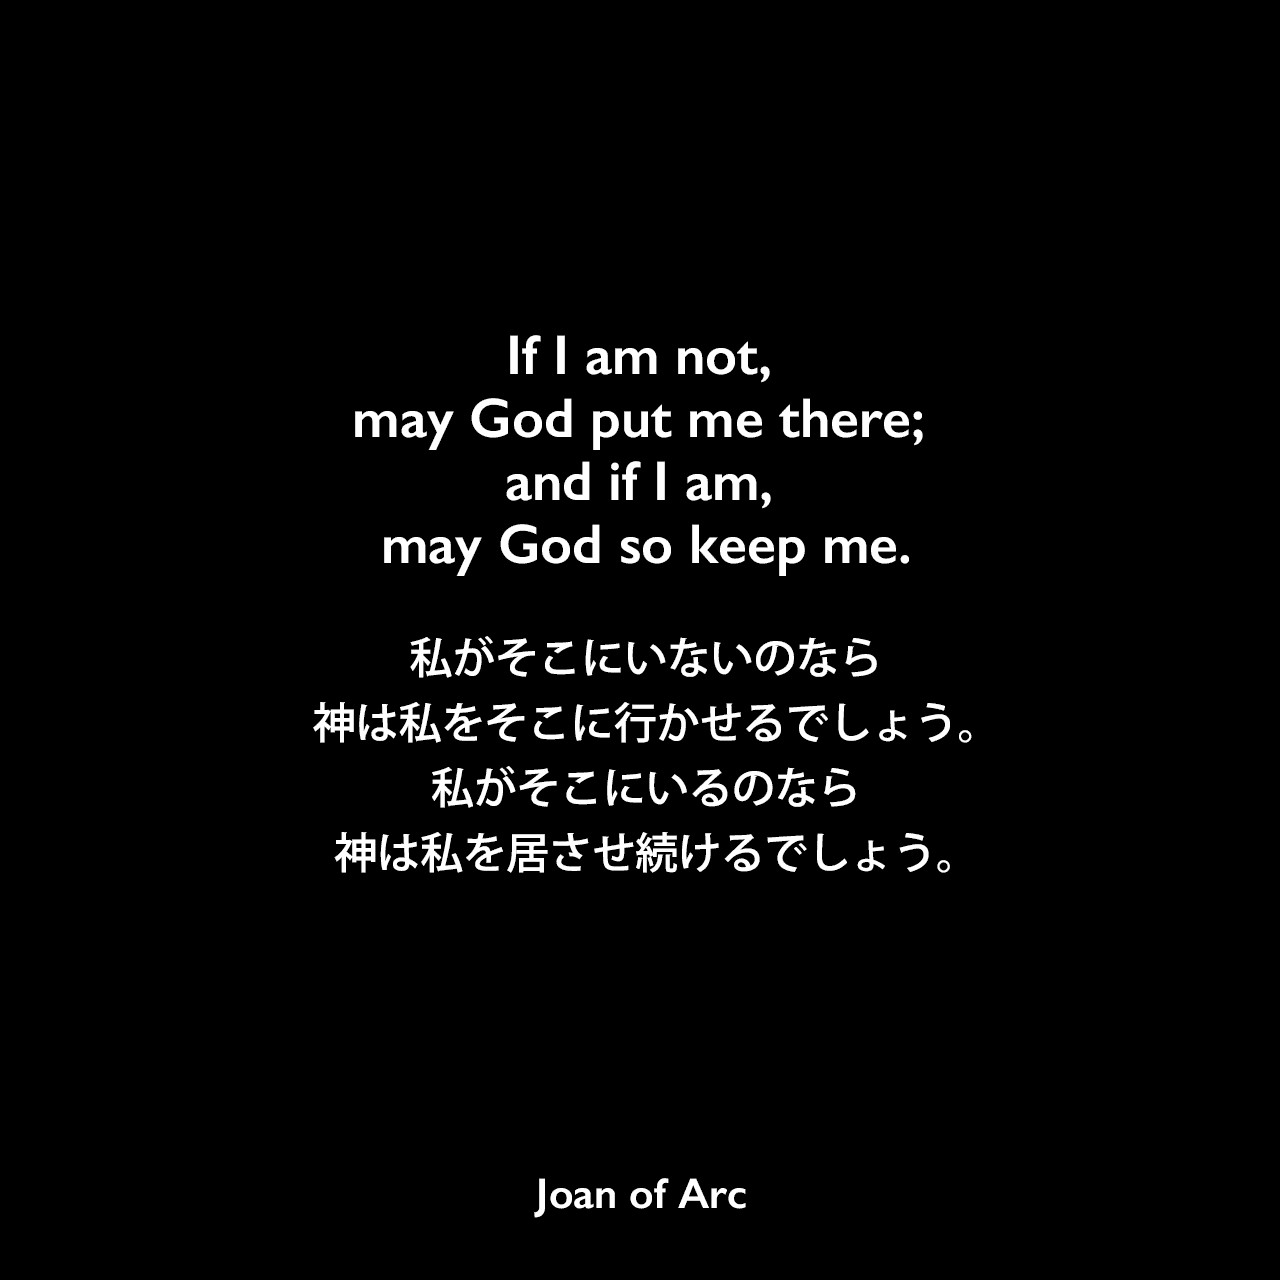 If I am not, may God put me there; and if I am, may God so keep me.私がそこにいないのなら神は私をそこに行かせるでしょう。私がそこにいるのなら神は私を居させ続けるでしょう。- ジャンヌ・ダルクの公判記録よりJoan of Arc